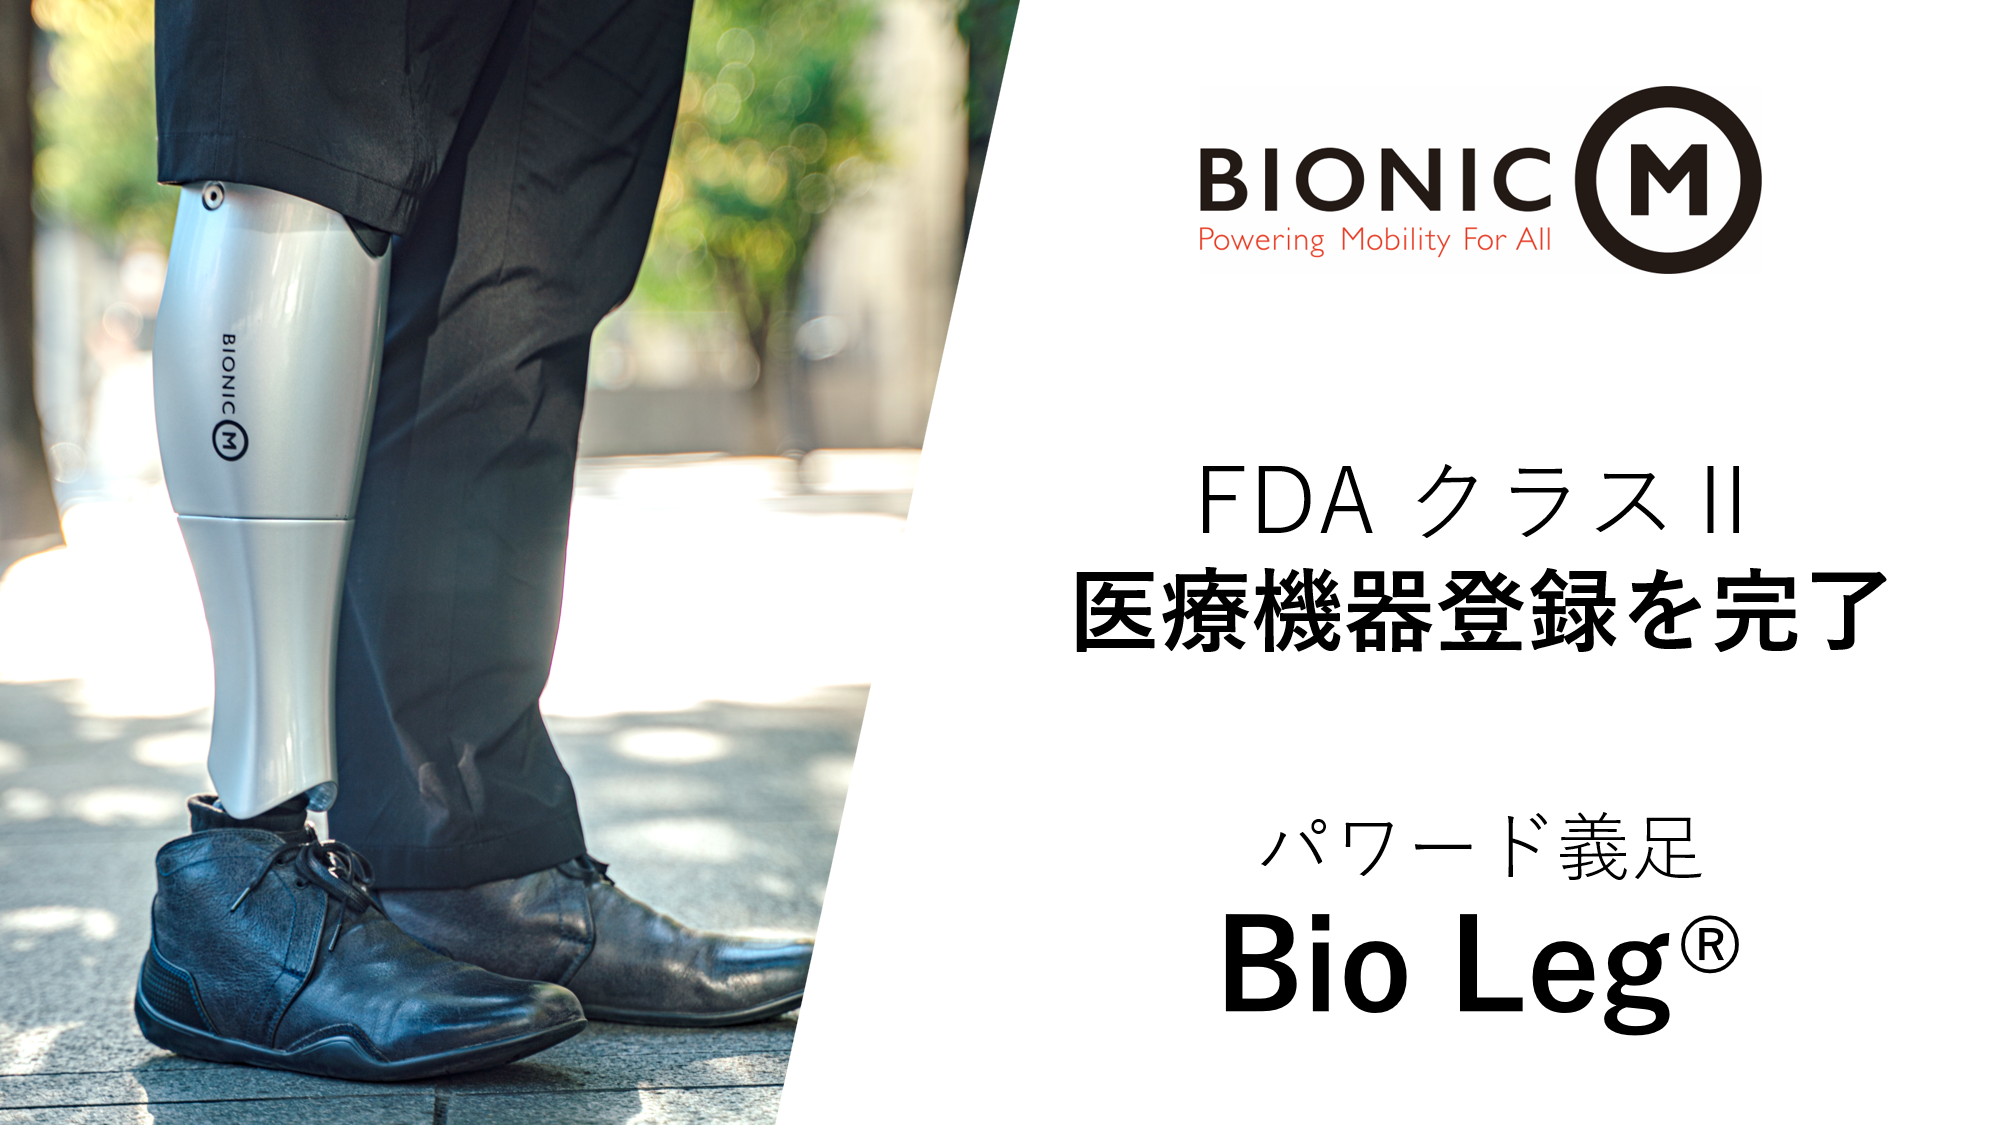 動力アシスト機能付きパワード義足「Bio Leg®」、米国食品医薬品局（FDA）クラスⅡ医療機器に登録